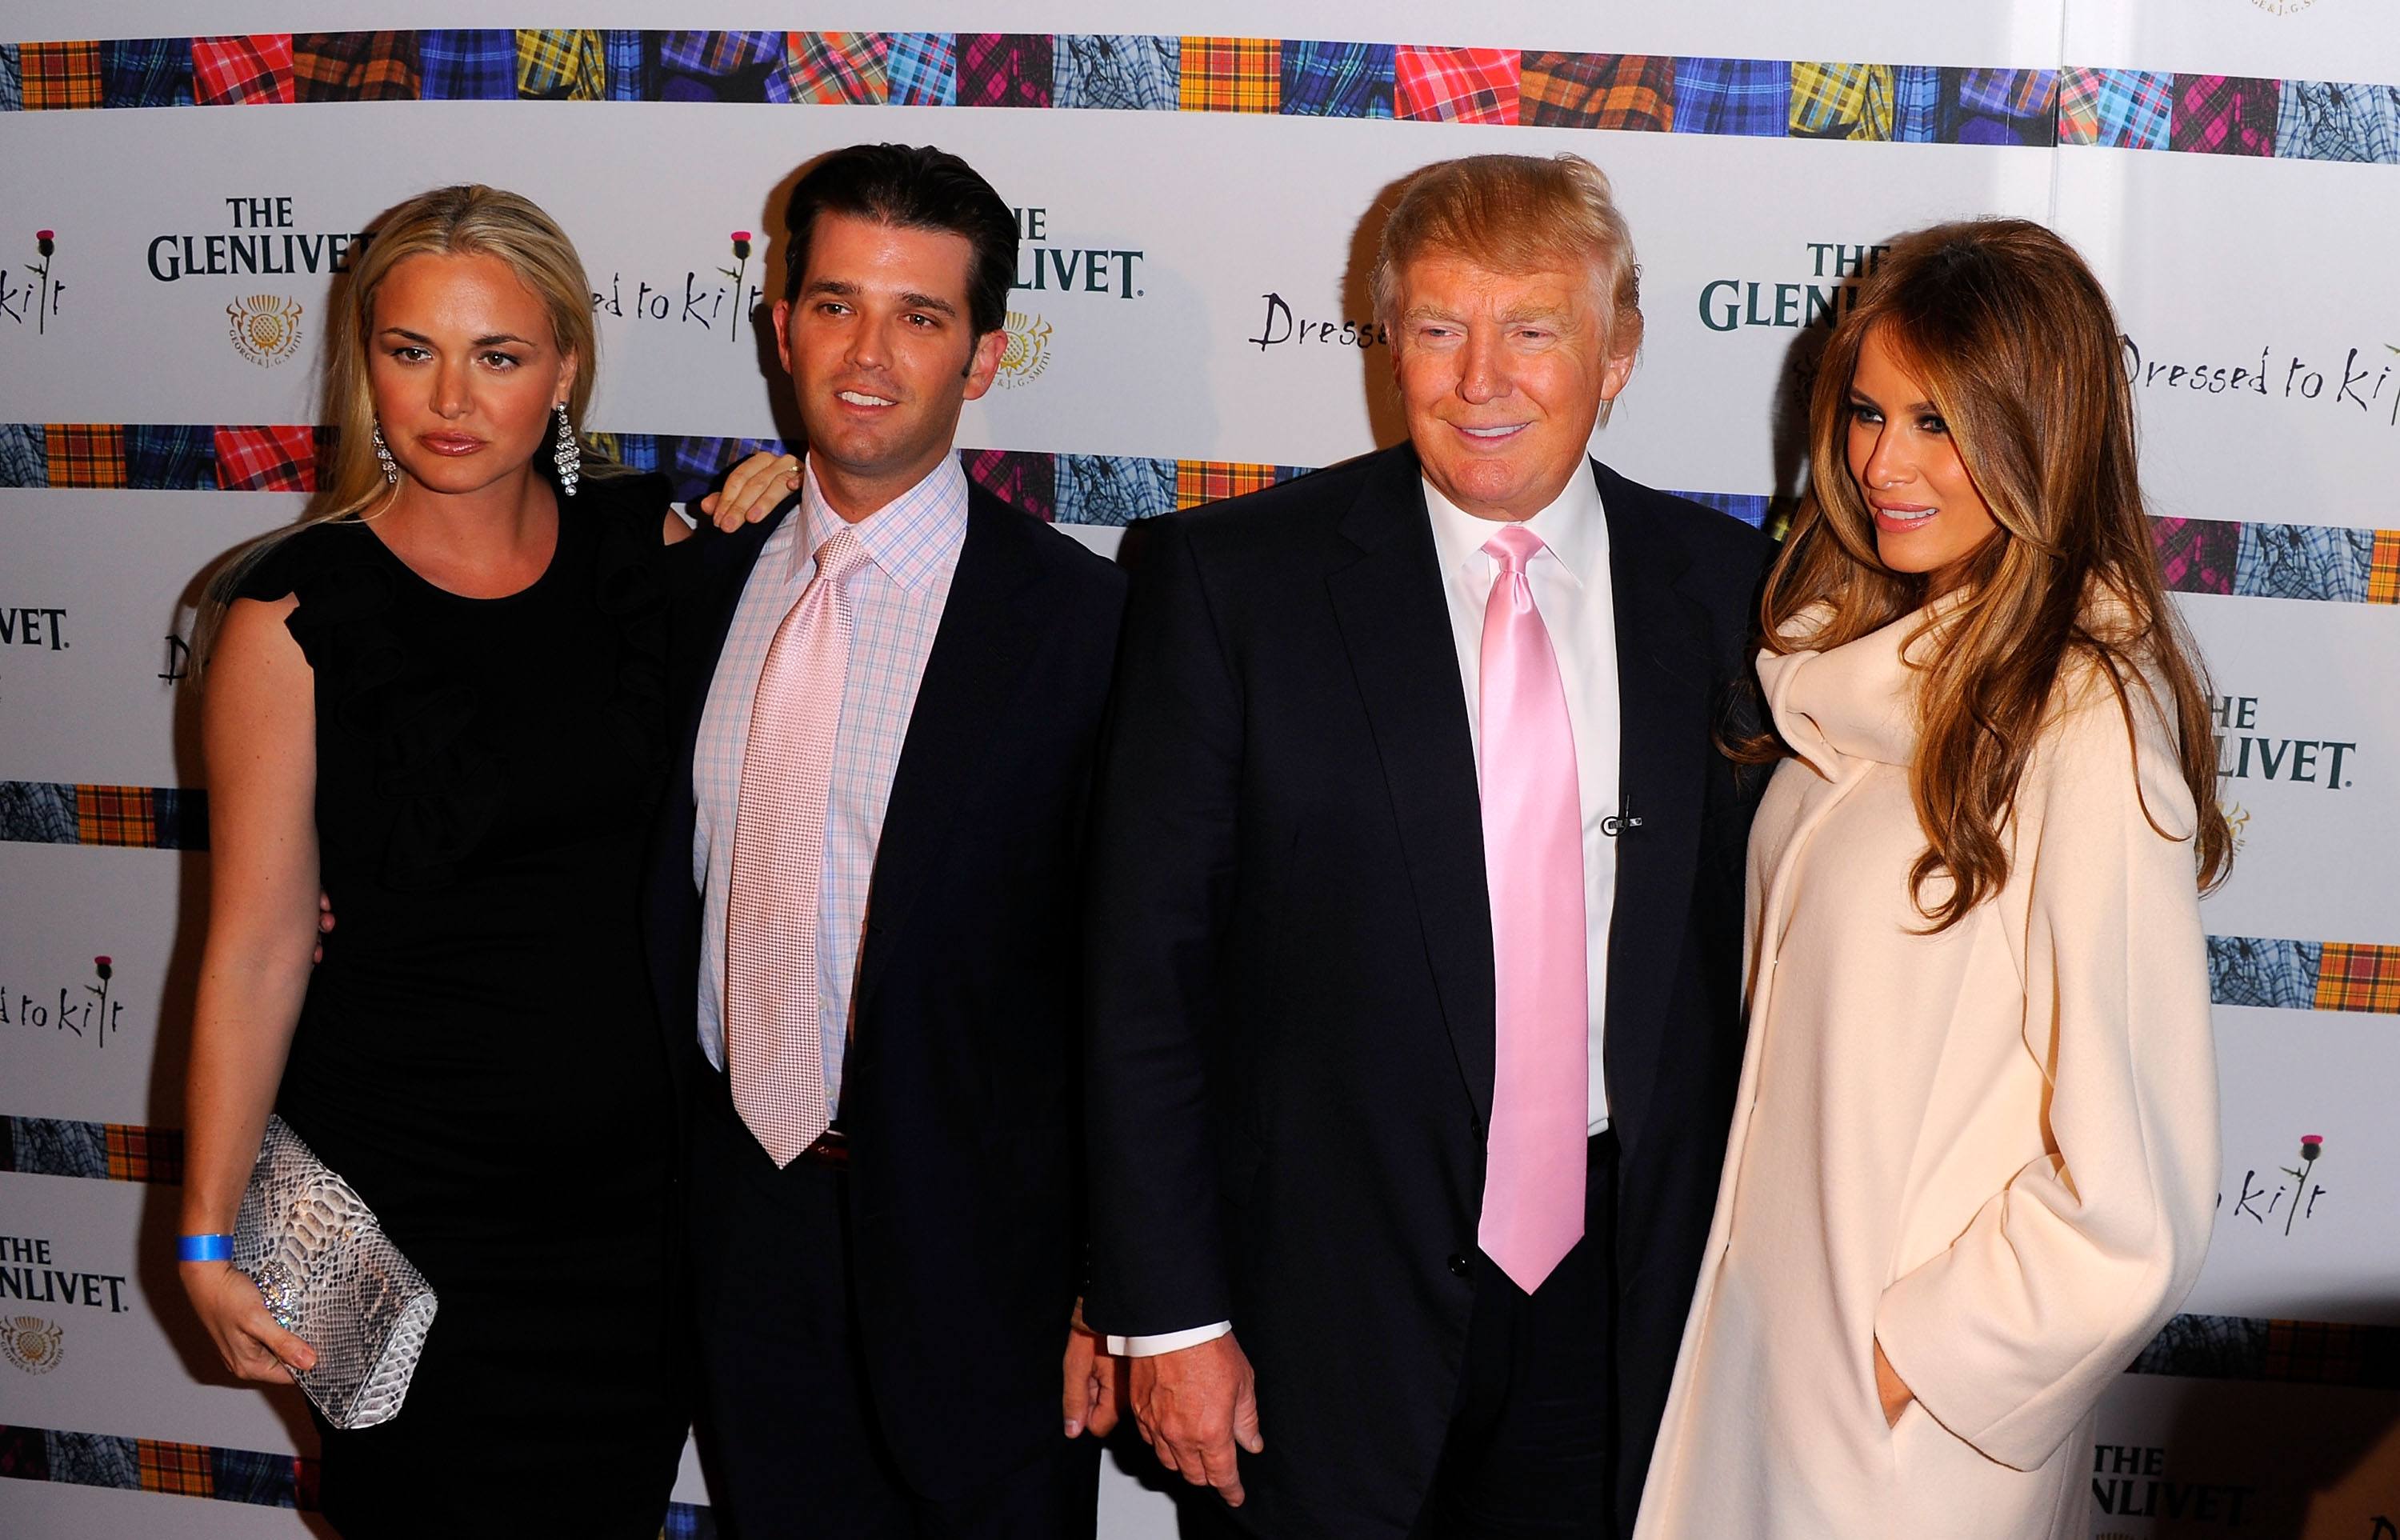 Vanessa Trump, Donald Trump Jr., Donald Trump and Melania Trump posing together.